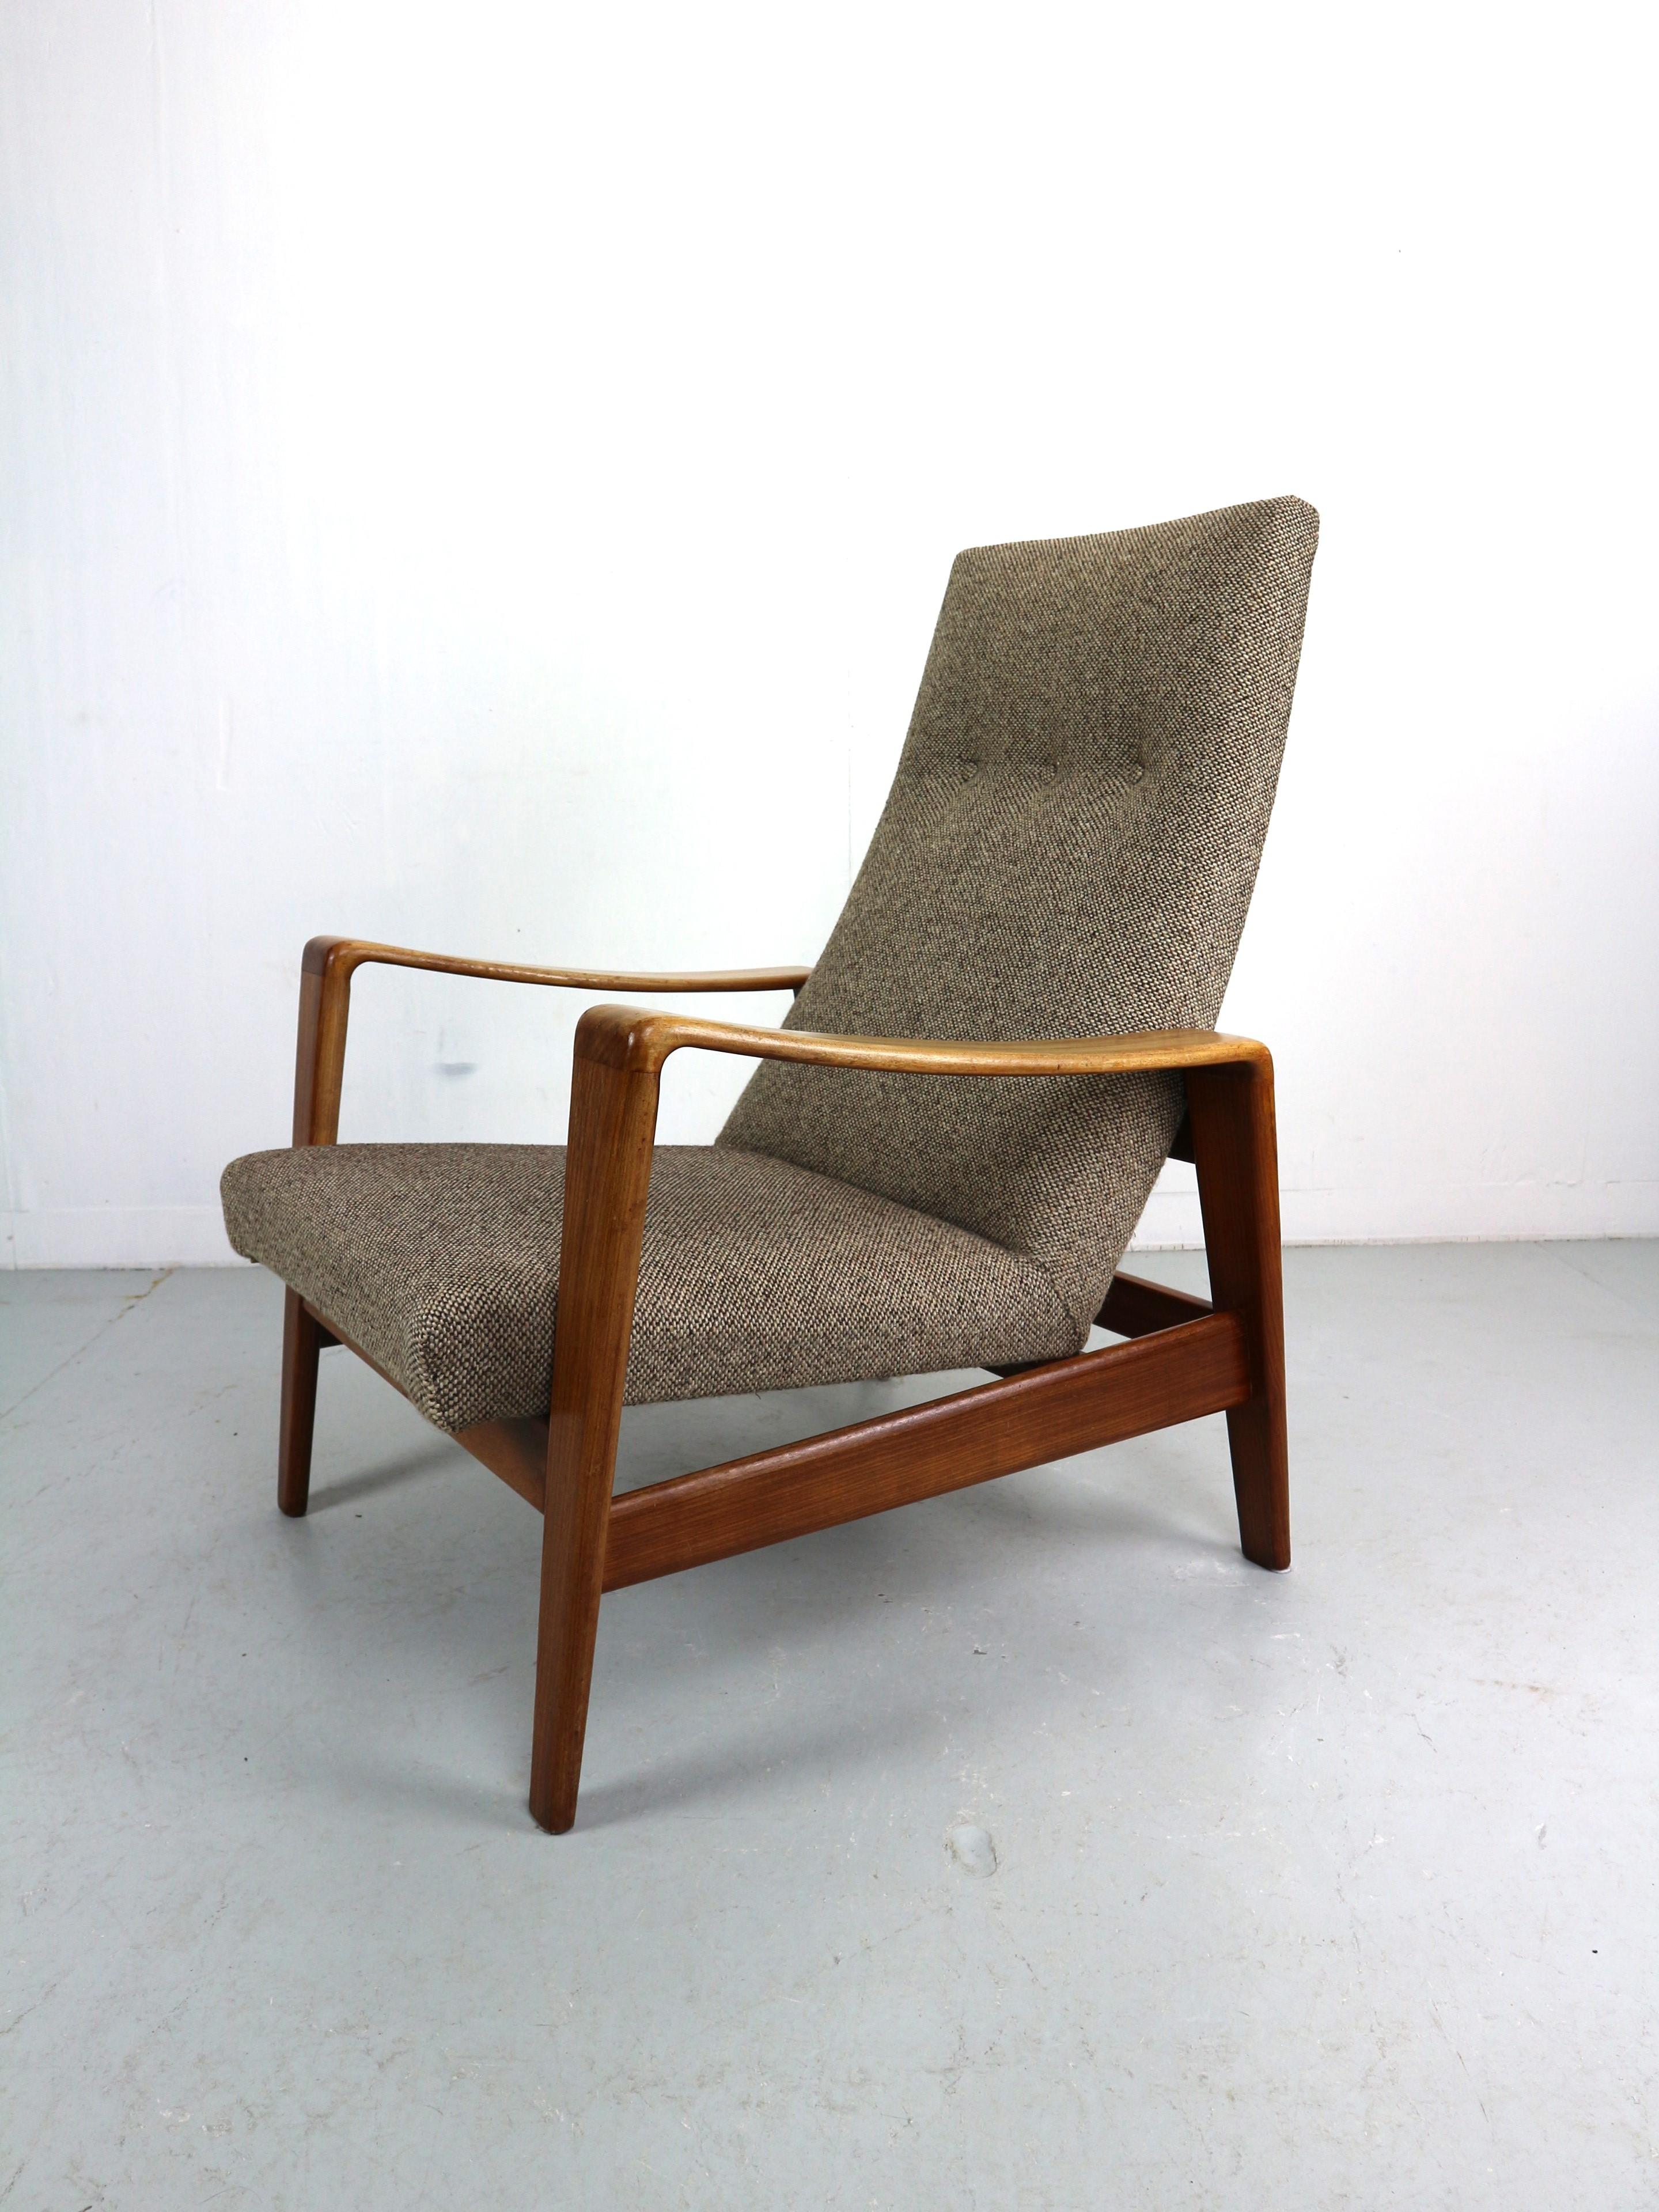 Sessel, entworfen von Arne Wahl Iversen, hergestellt von Komfort Denmark 1960. Die Stühle haben einen massiven Teakholzrahmen und sind original hellbraun gepolstert. Diese organisch und dynamisch geformten Stühle sehen in jedem Wohnzimmer gut aus.